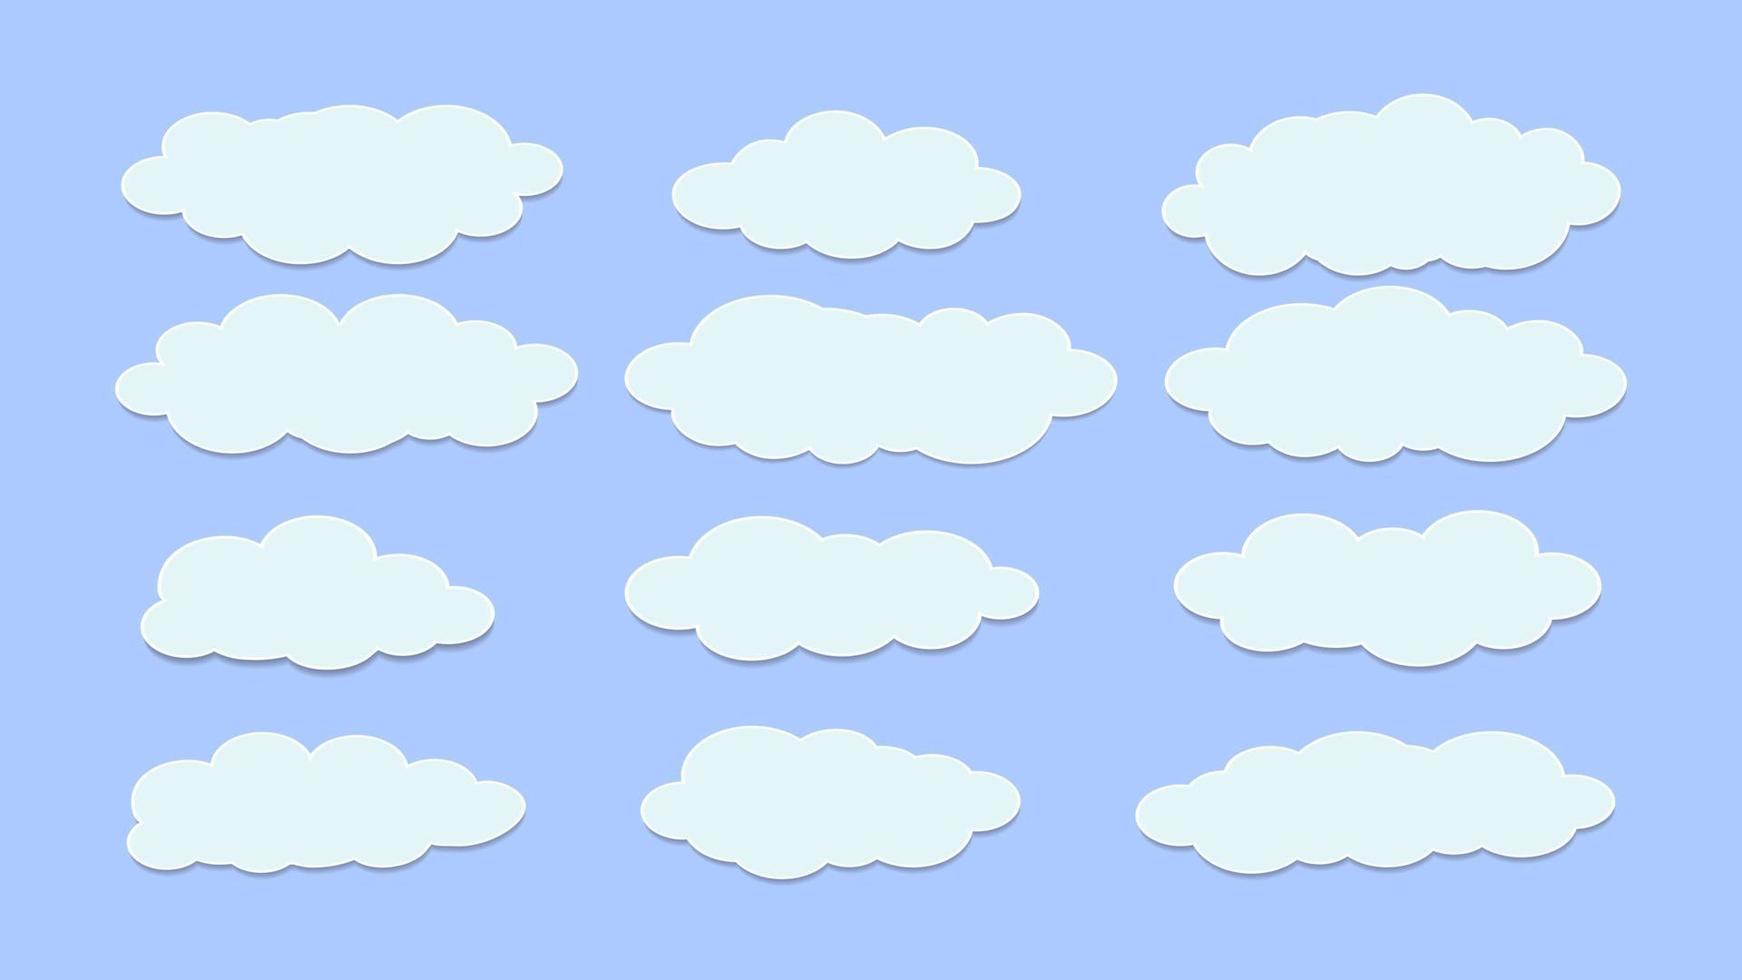 conjunto de nuvens brancas com formas diferentes, ilustração vetorial vetor